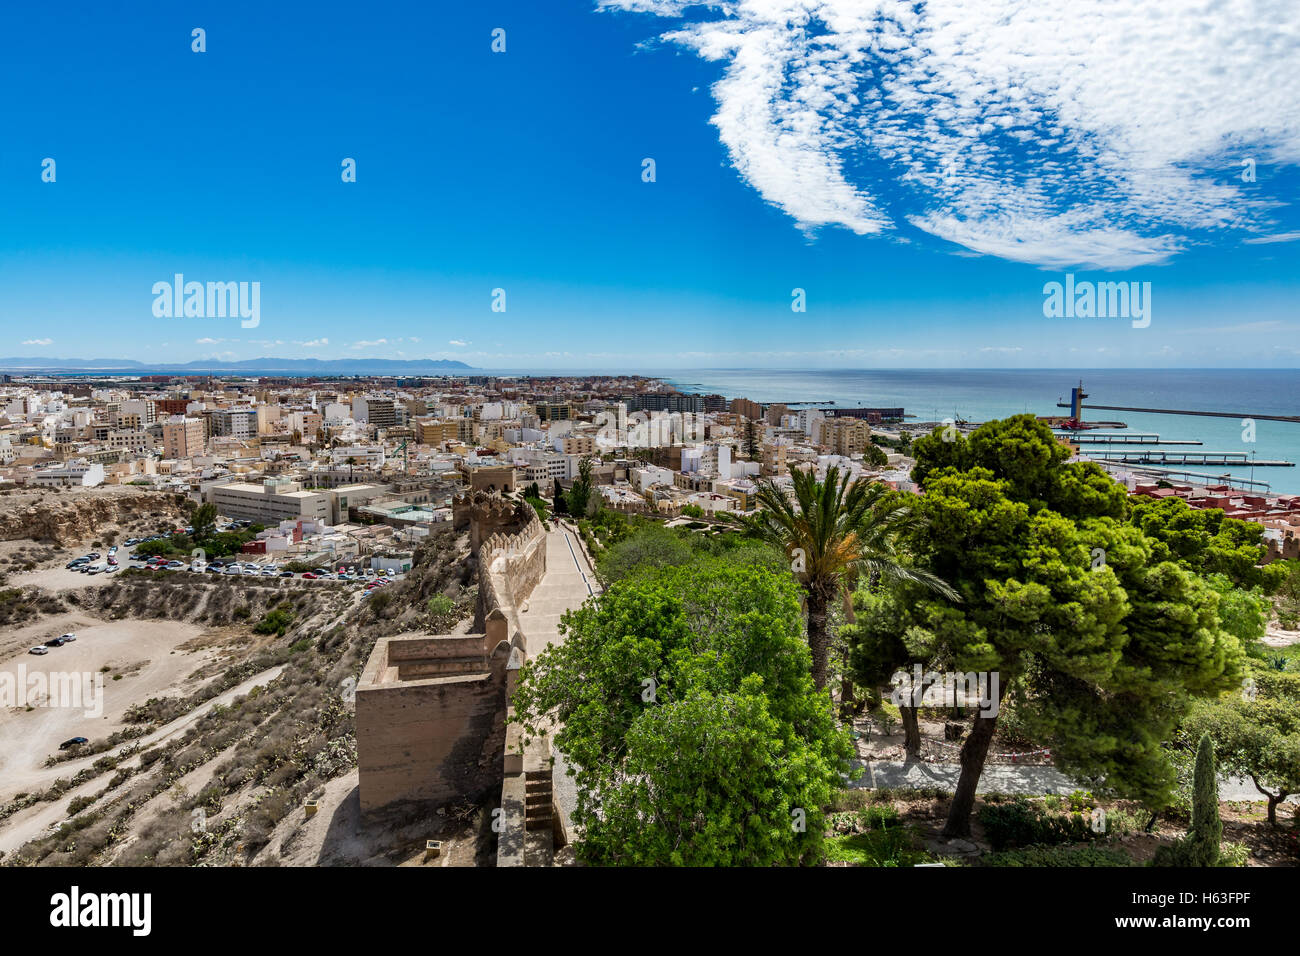 Paysage urbain panoramique d'Almeria avec les murs de l'Alcazaba (château), Espagne Banque D'Images